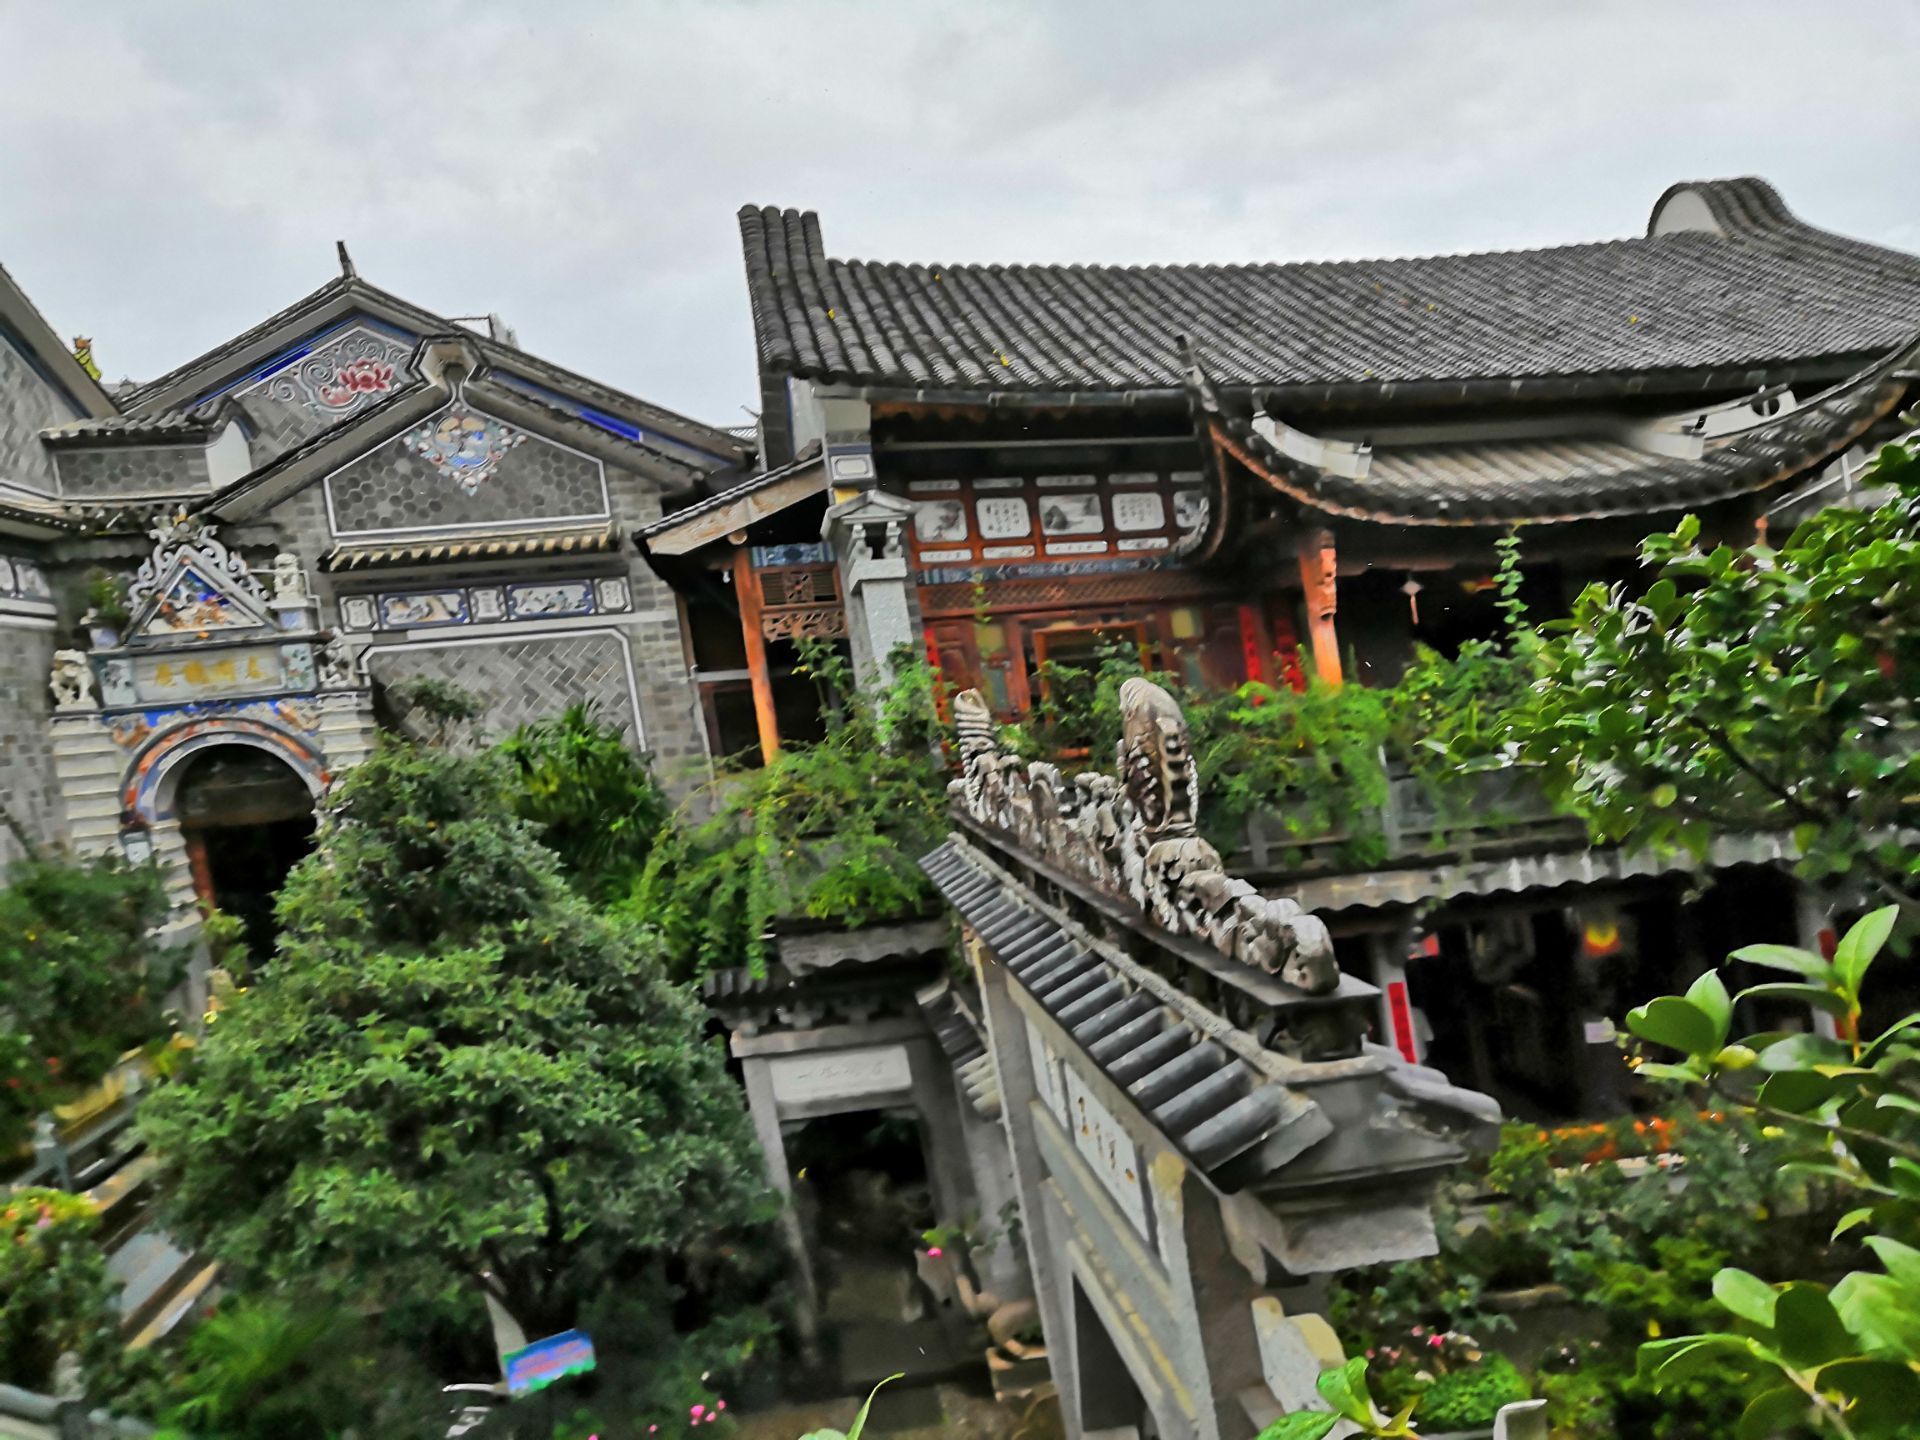 张家花园是解放前张伯卿的私人会馆,位于自贡筱溪境内,地处太平山南麓